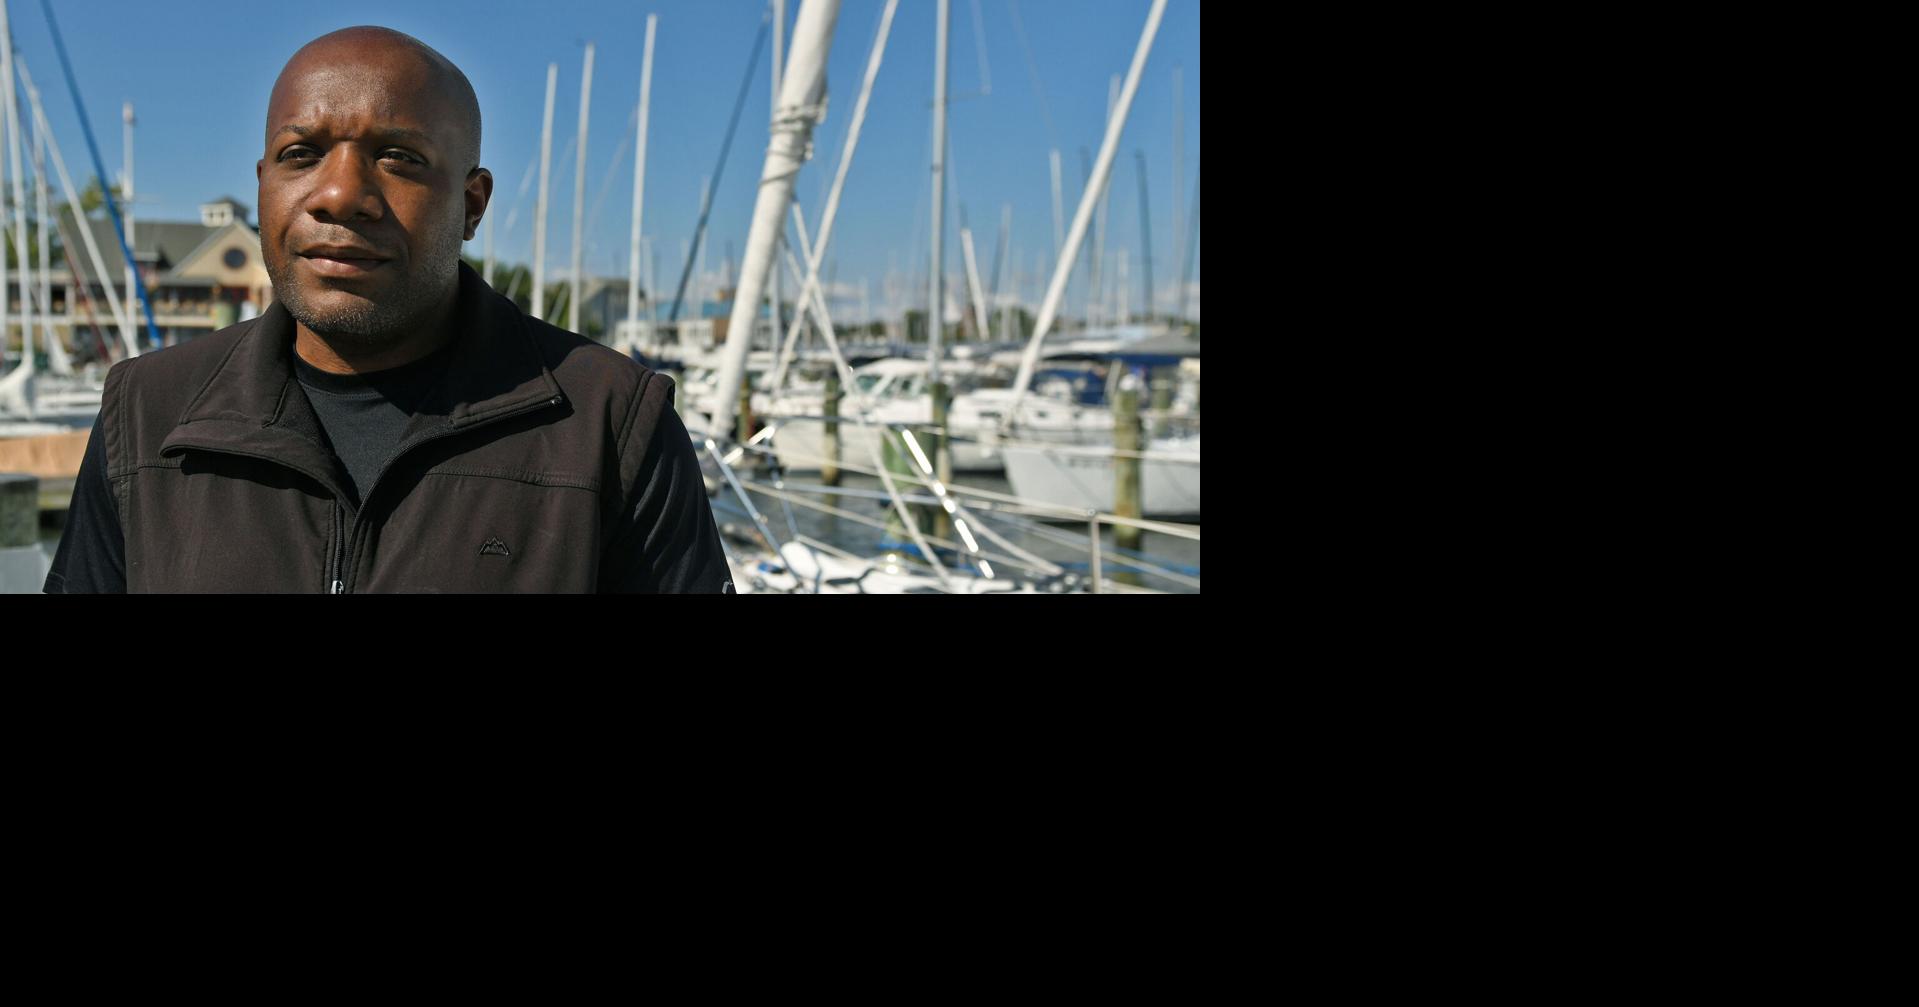 Marinero de Baltimore Donald Lawson desaparecido en el mar frente a la costa de México, dice la Guardia Costera |  deportes nacionales